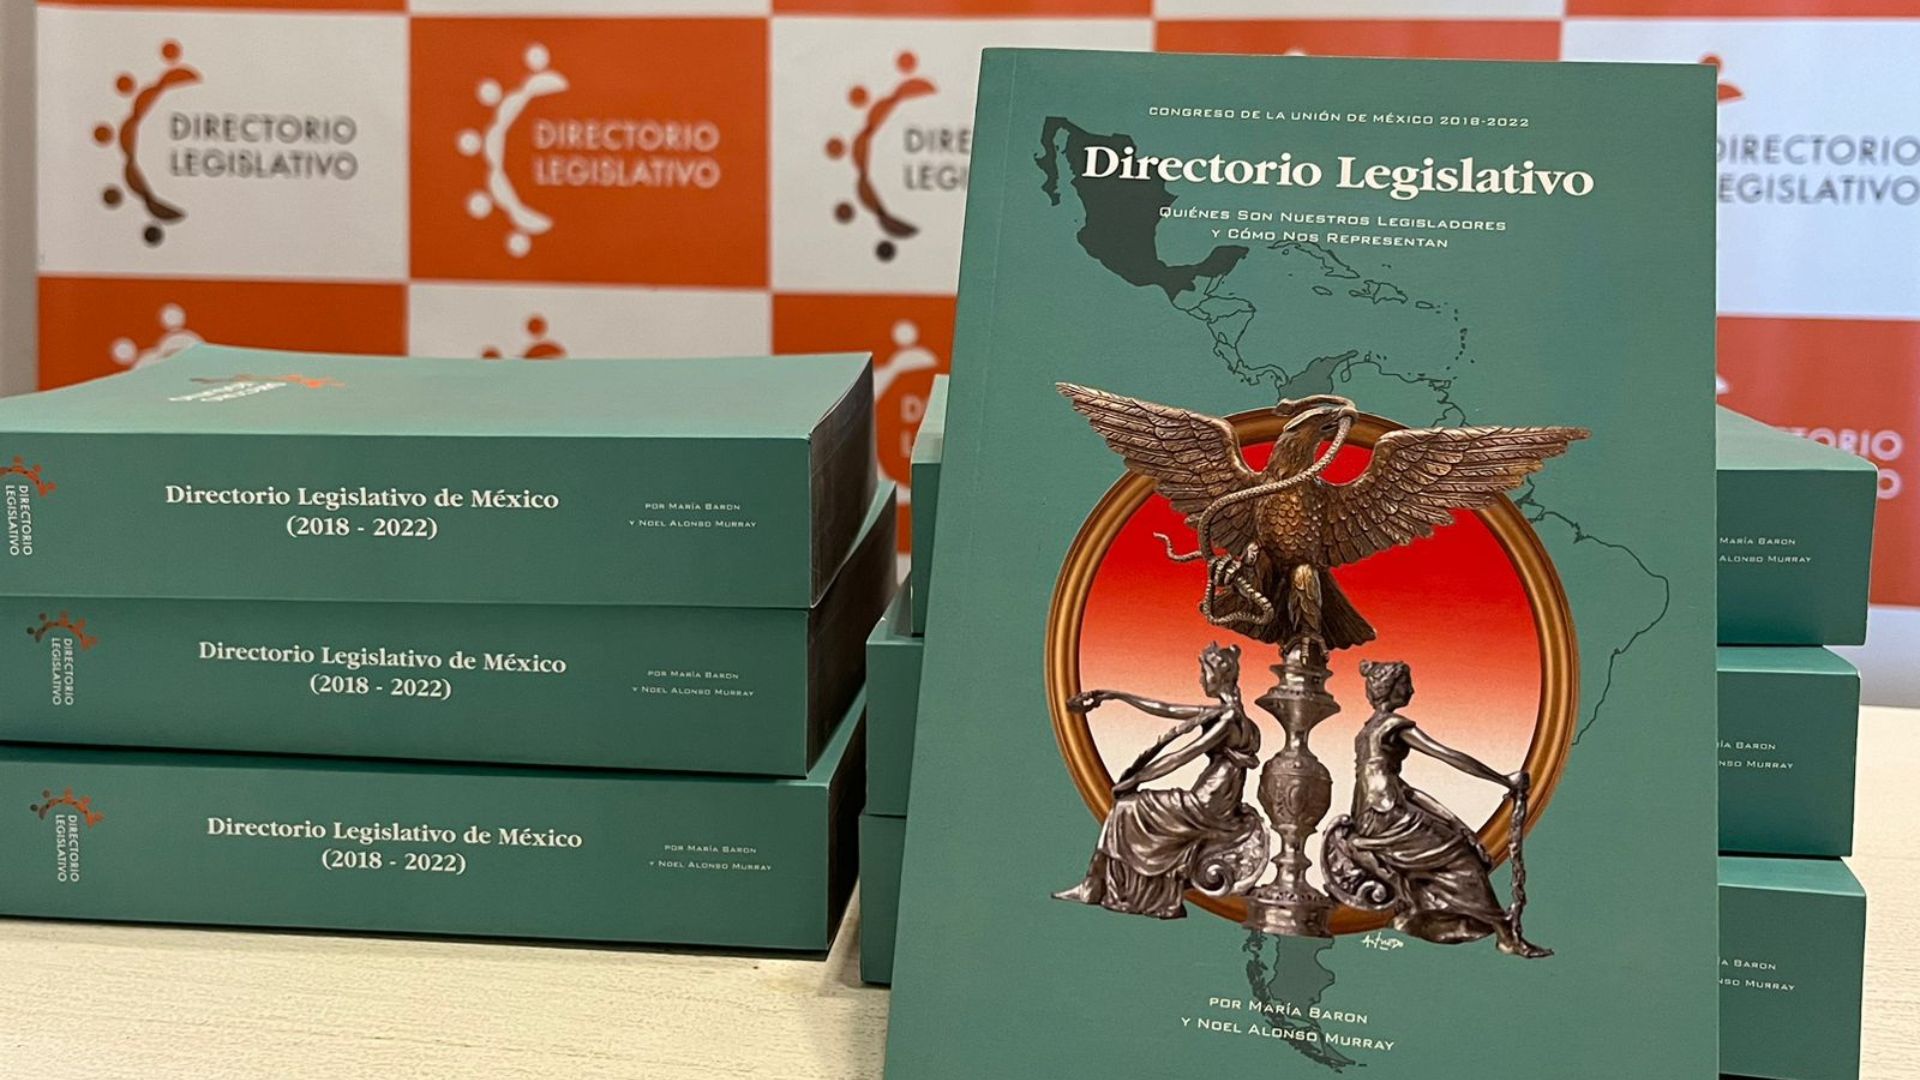 El Directorio Legislativo se imprime en formato libro, aunque además se encuentra disponible en una versión digital (Crédito: Fundación Directorio Legislativo)